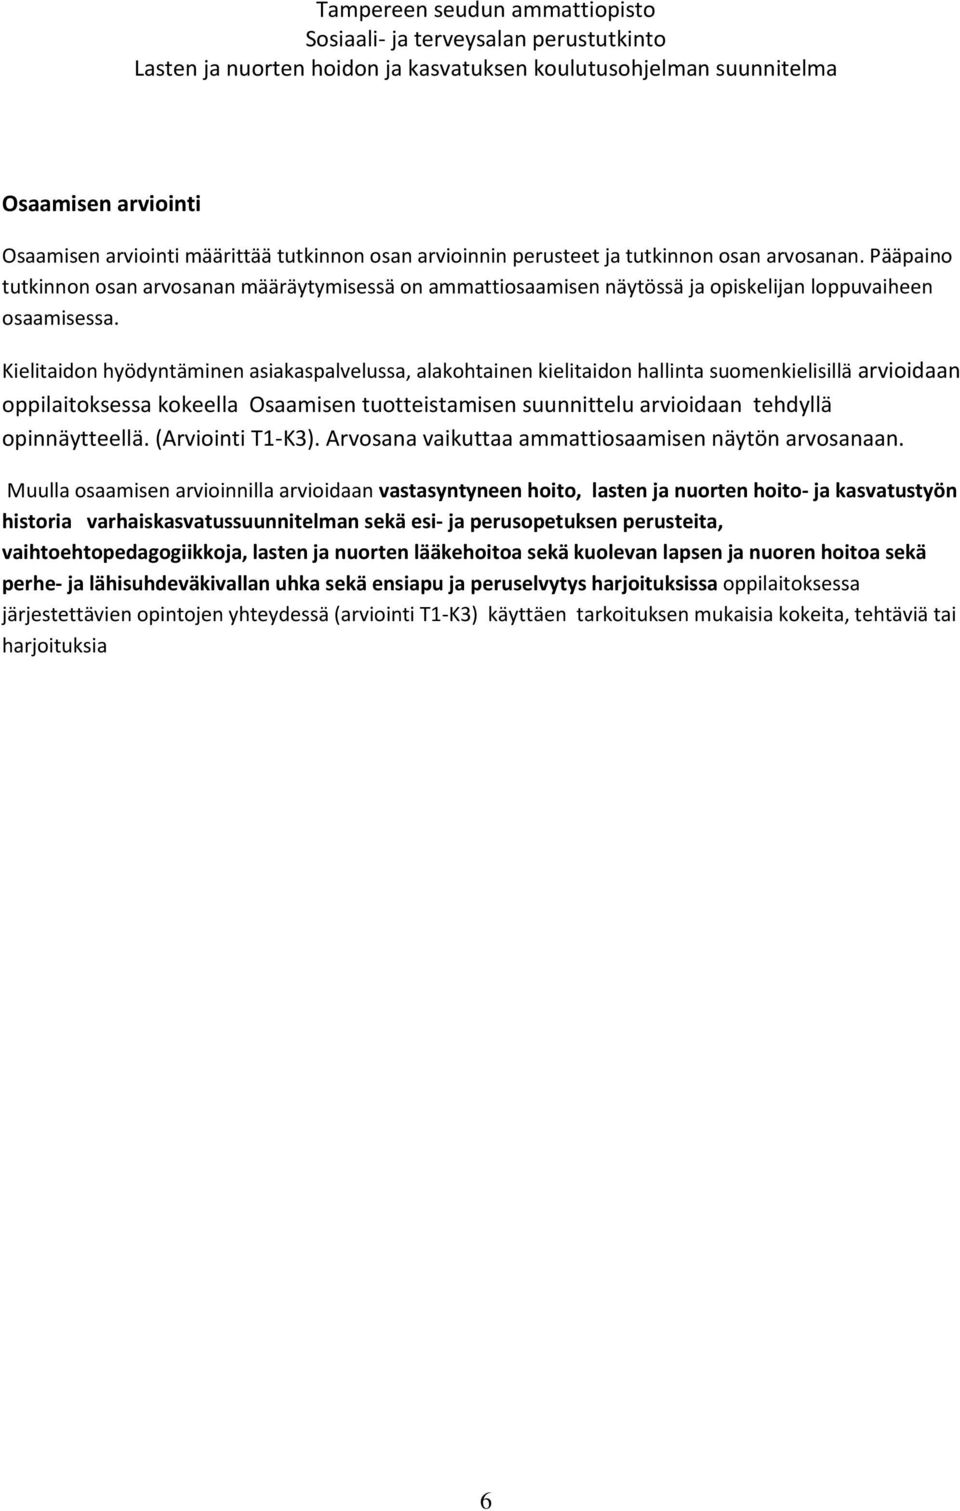 Kielitaidon hyödyntäminen asiakaspalvelussa, alakohtainen kielitaidon hallinta suomenkielisillä arvioidaan oppilaitoksessa kokeella Osaamisen tuotteistamisen suunnittelu arvioidaan tehdyllä